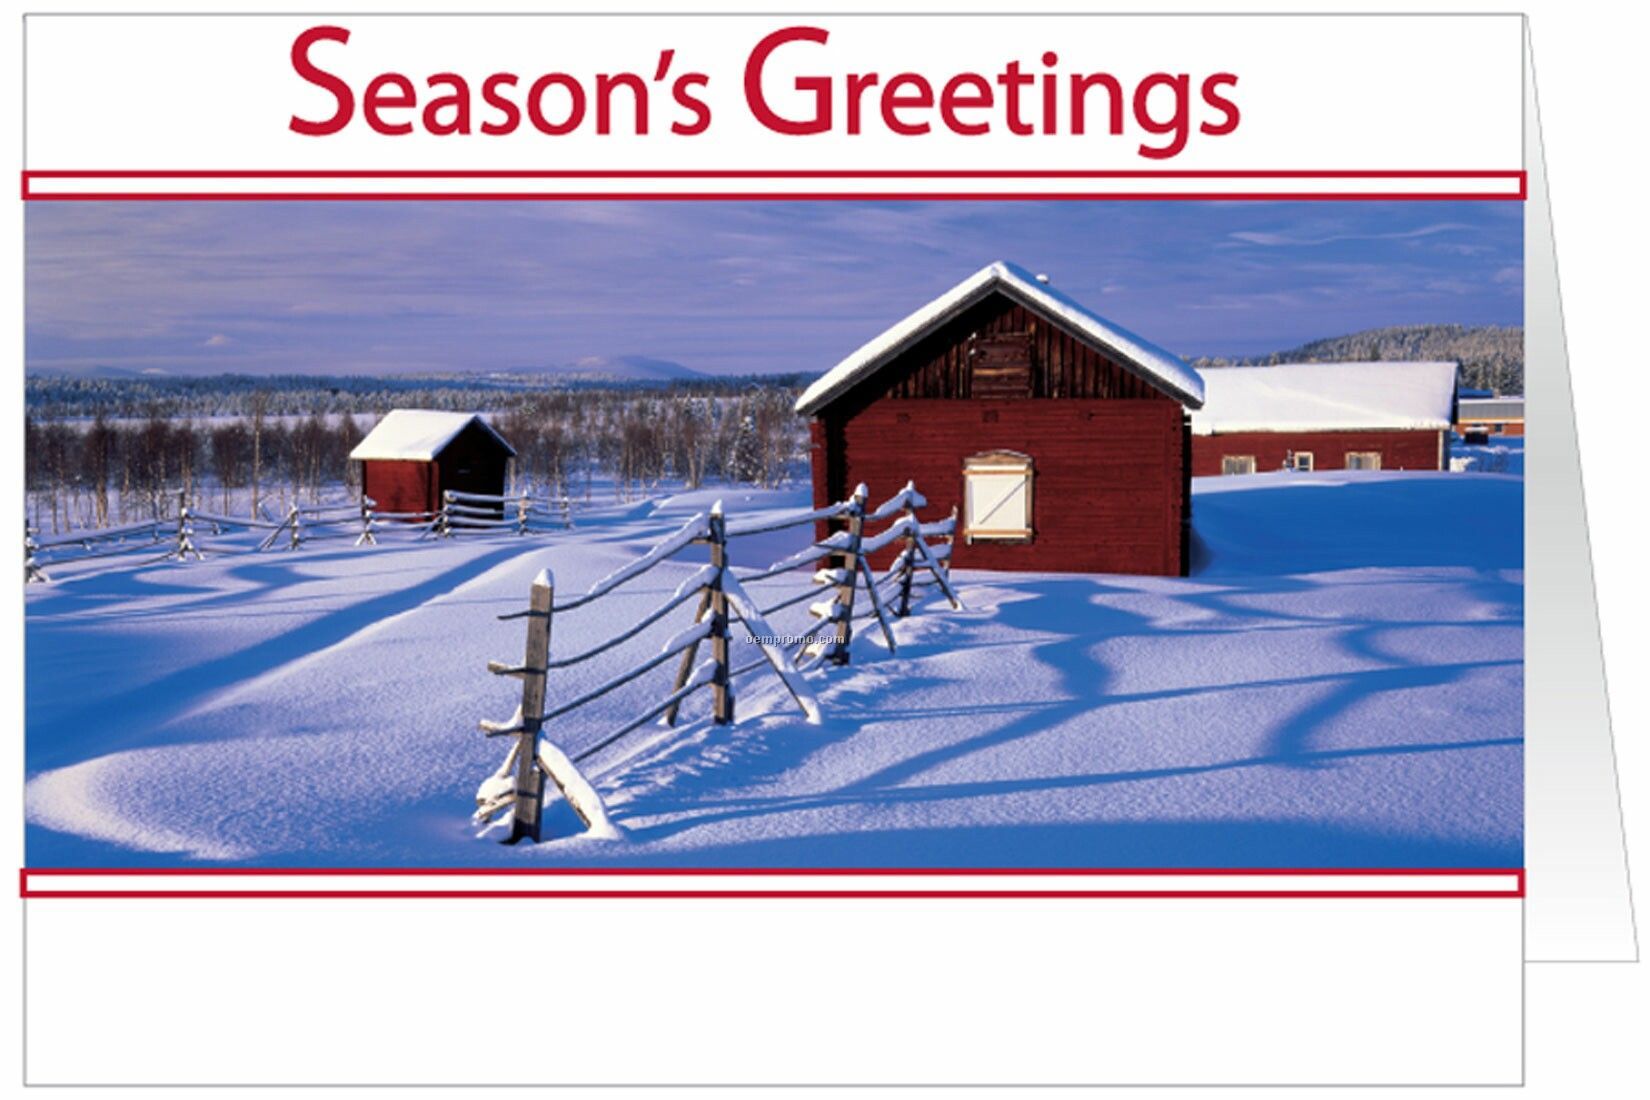 Snowy Farm Holiday Greeting Card